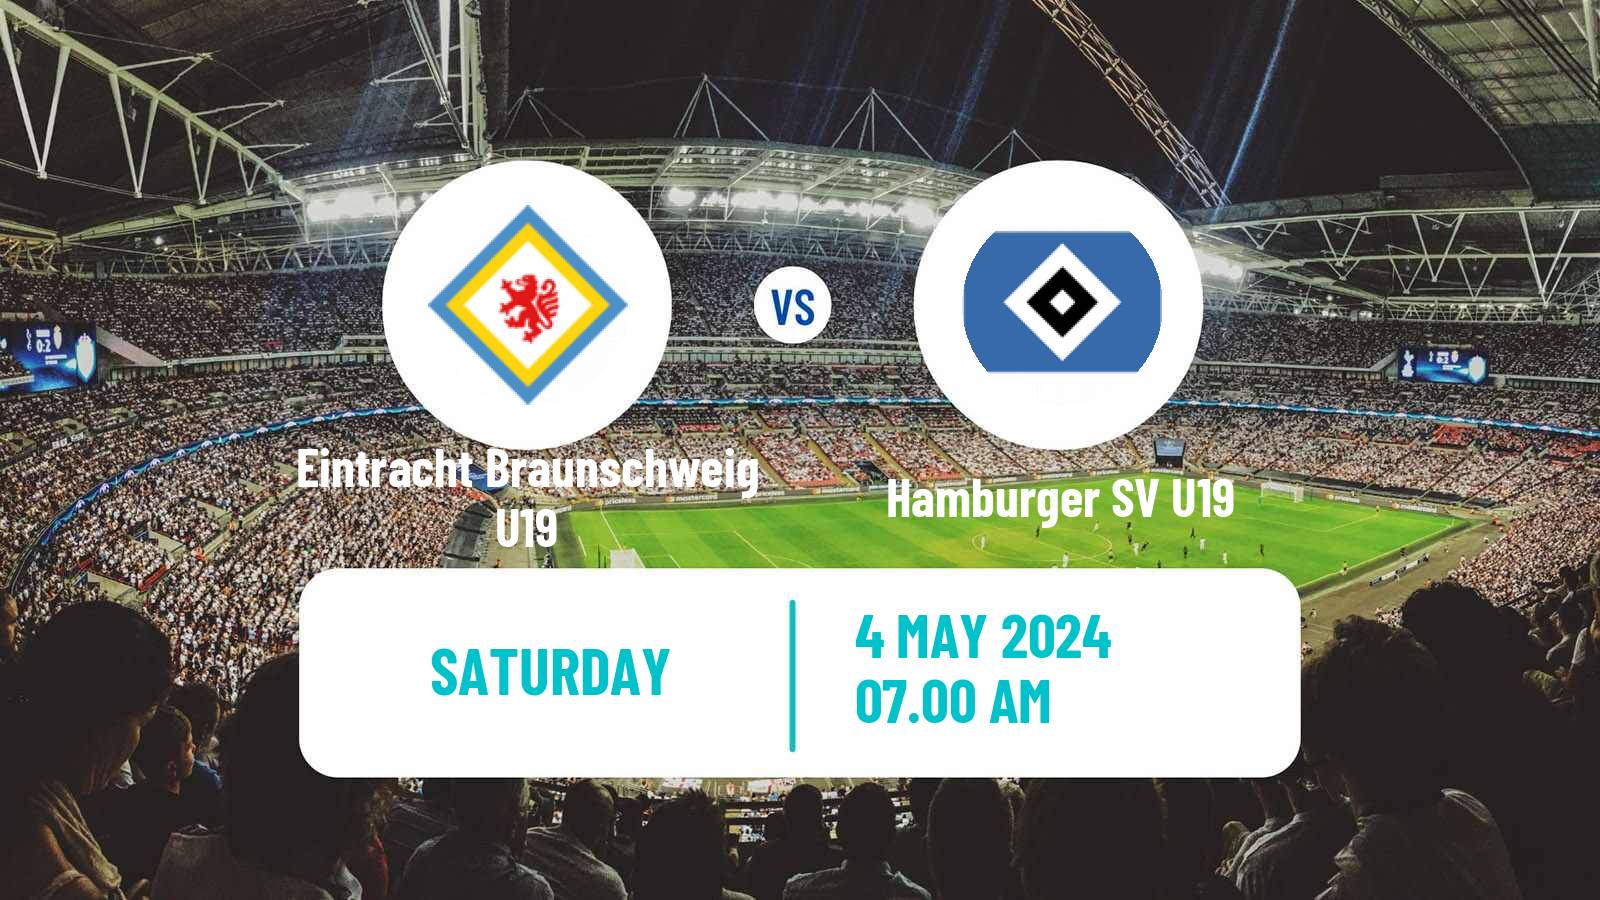 Soccer German Junioren Bundesliga North Eintracht Braunschweig U19 - Hamburger SV U19